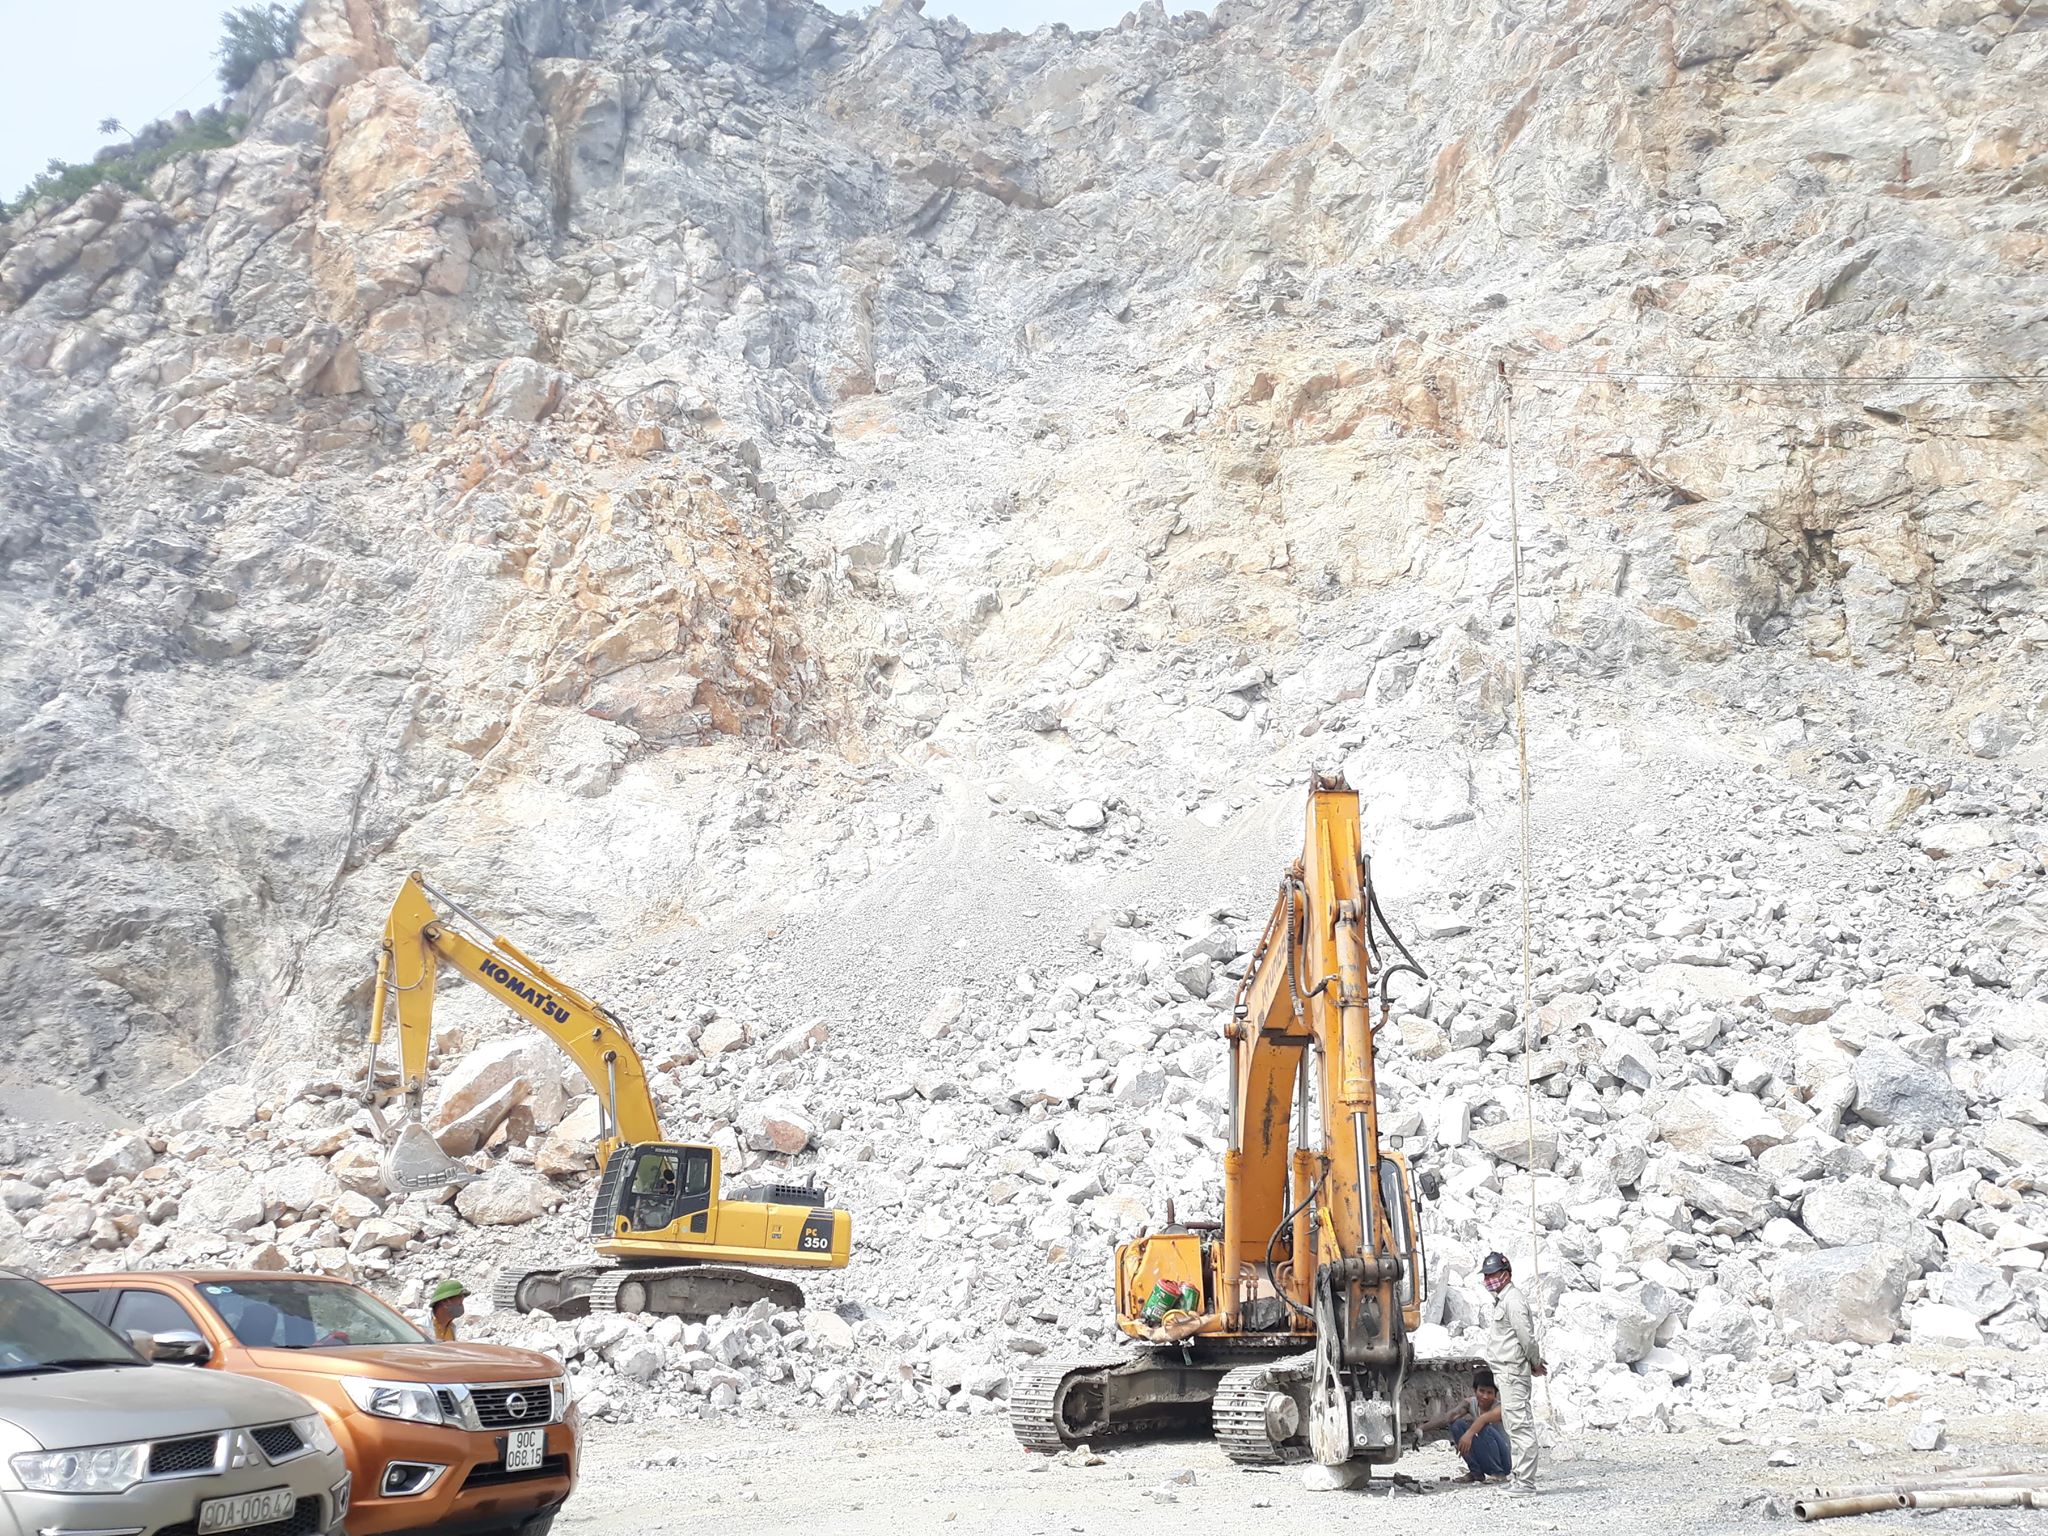 Hồ sơ doanh nghiệp - Tracodi góp vốn 150 tỷ đồng vào một dự án khai thác đá tại Bình Thuận